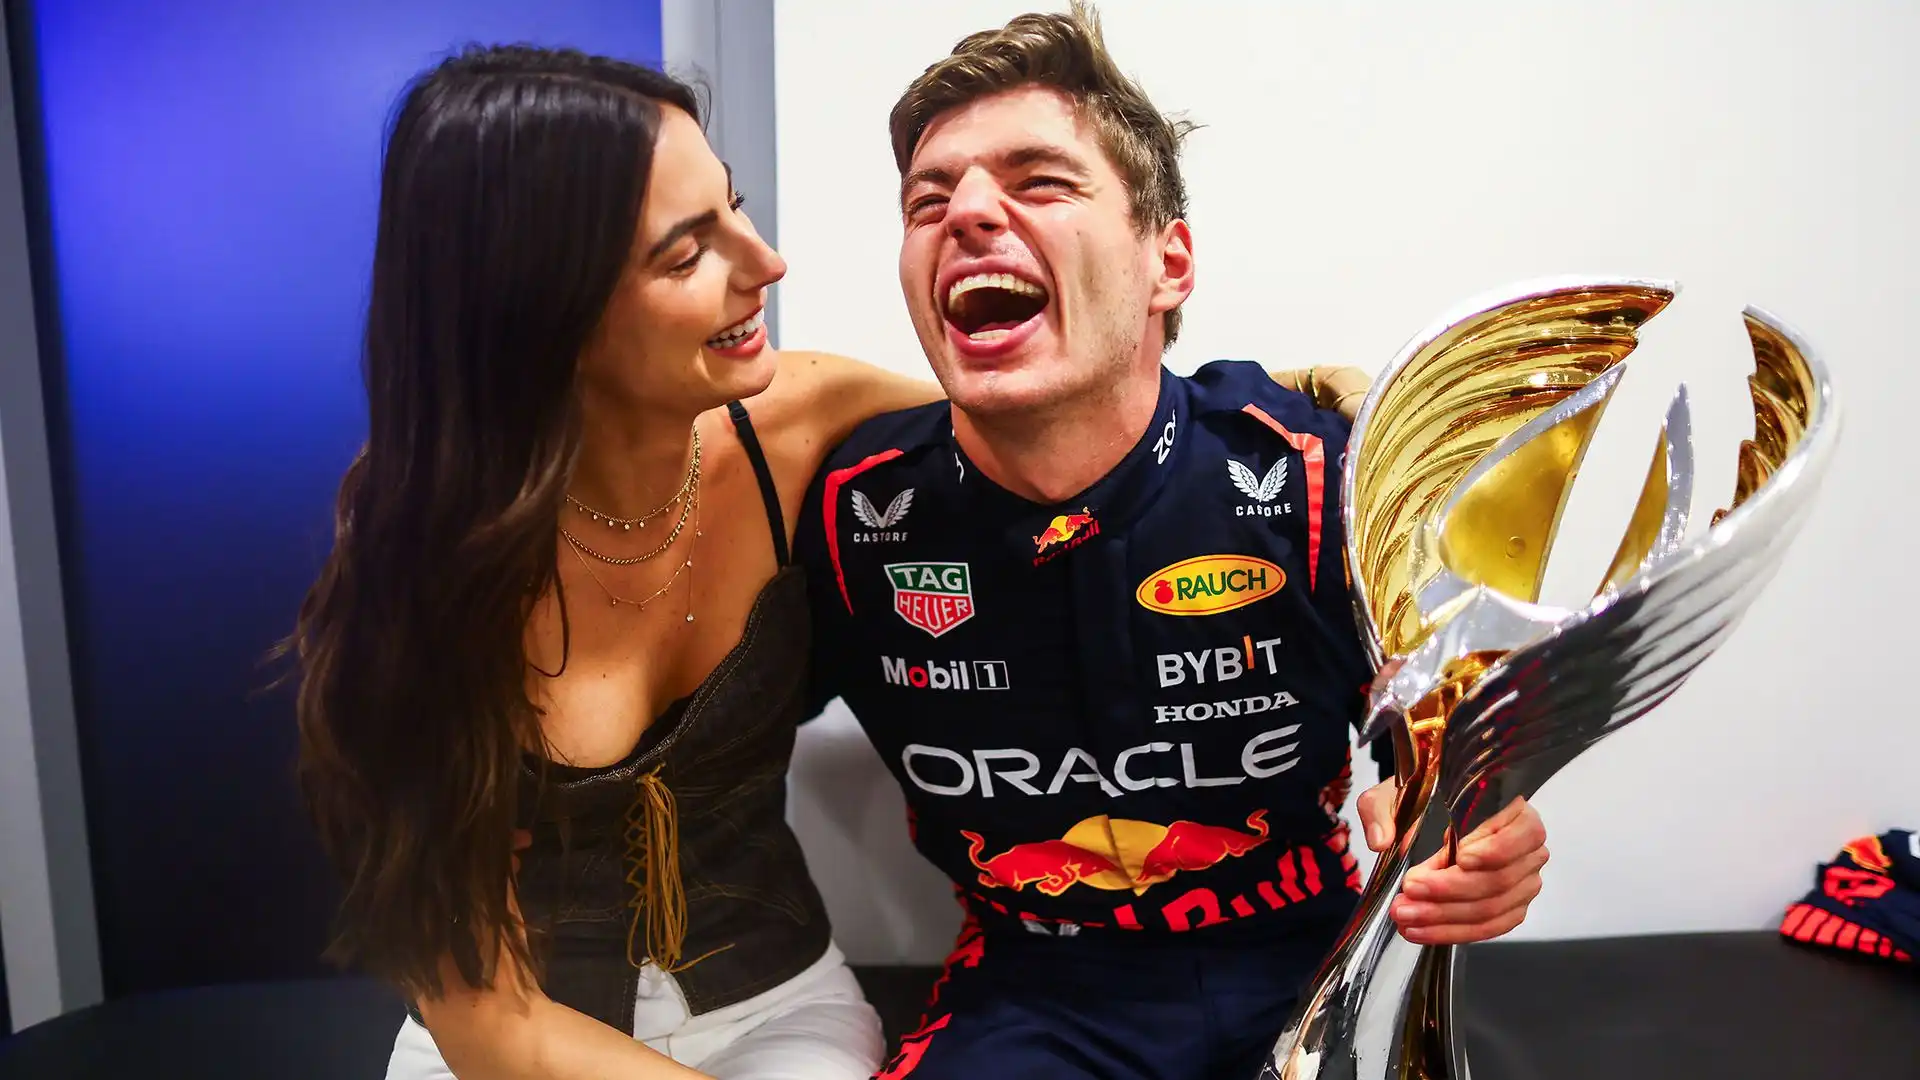 Kelly Piquet ha festeggiato l'ennesima vittoria del fidanzato Max Verstappen, che ha chiuso il Mondiale trionfando ad Abu Dhabi